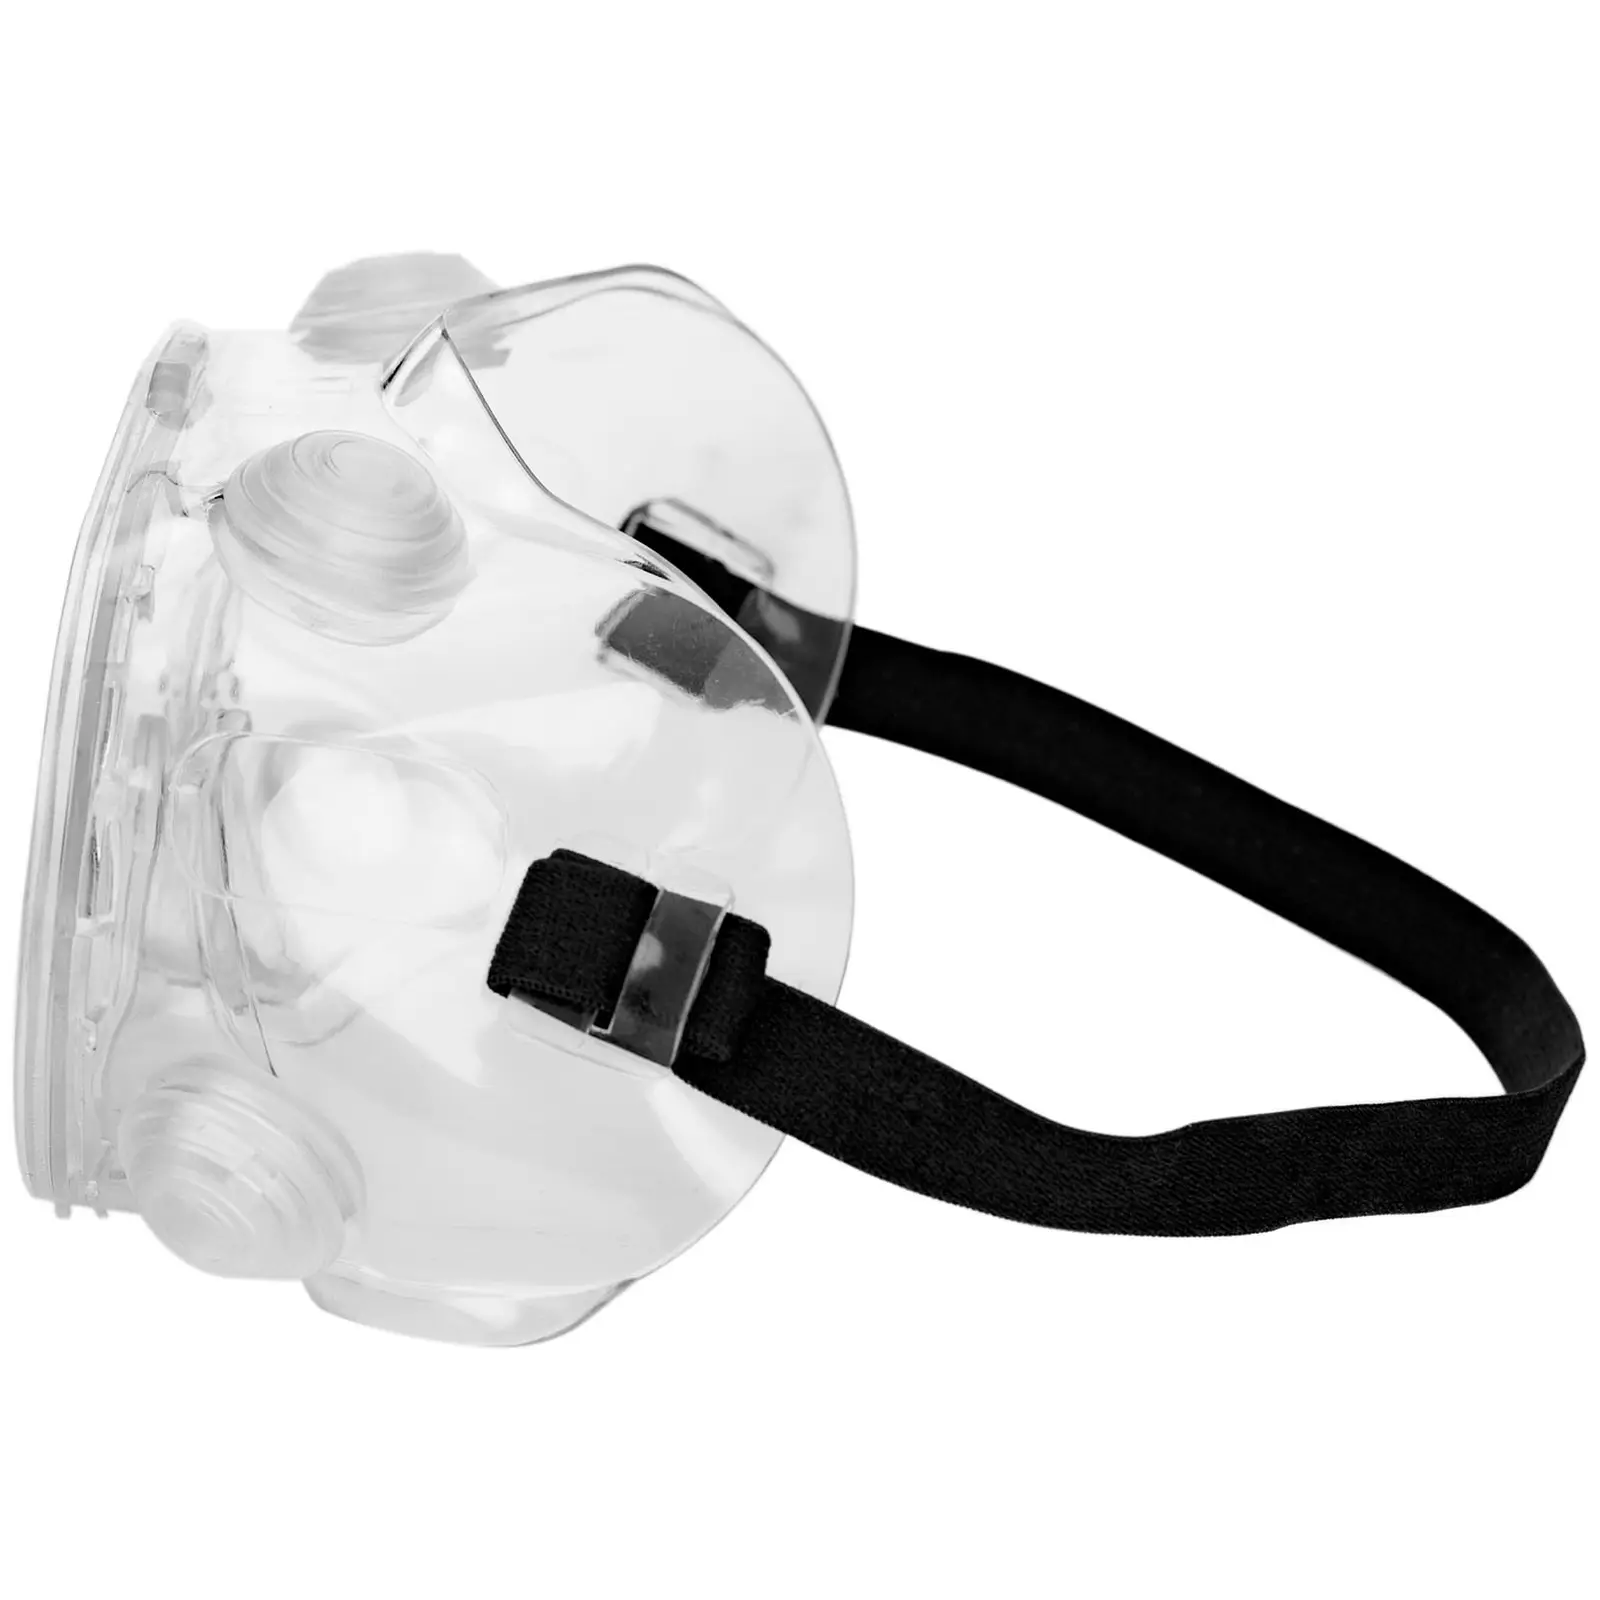 Beskyttelsesbriller - sett på 10 stk. - Transparent - one size